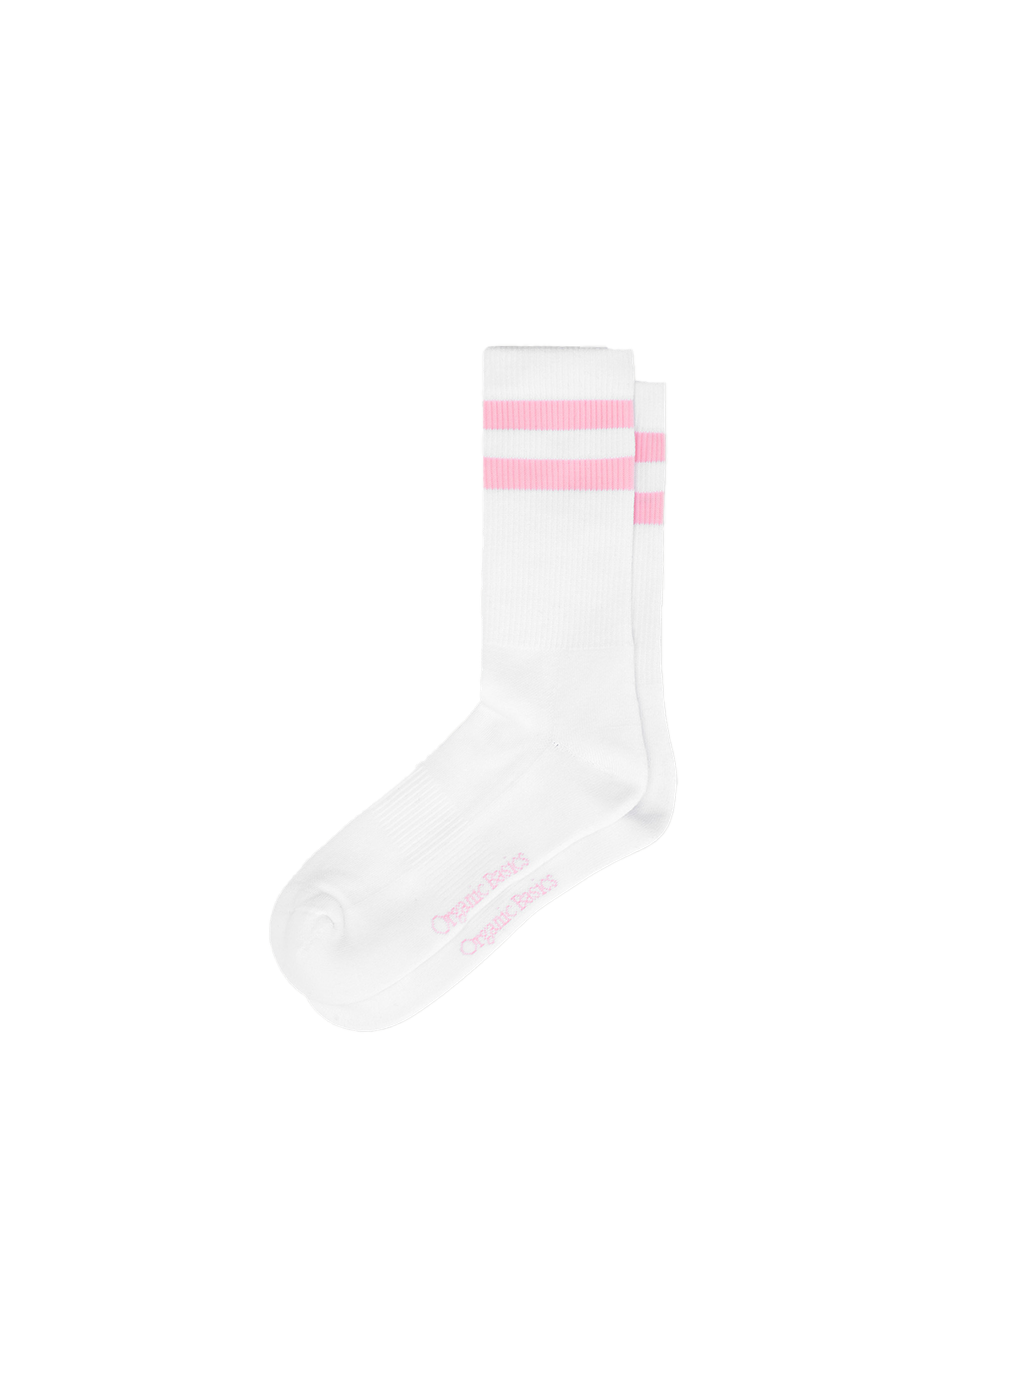 Pack de 2 pares de calcetines Core Stripe